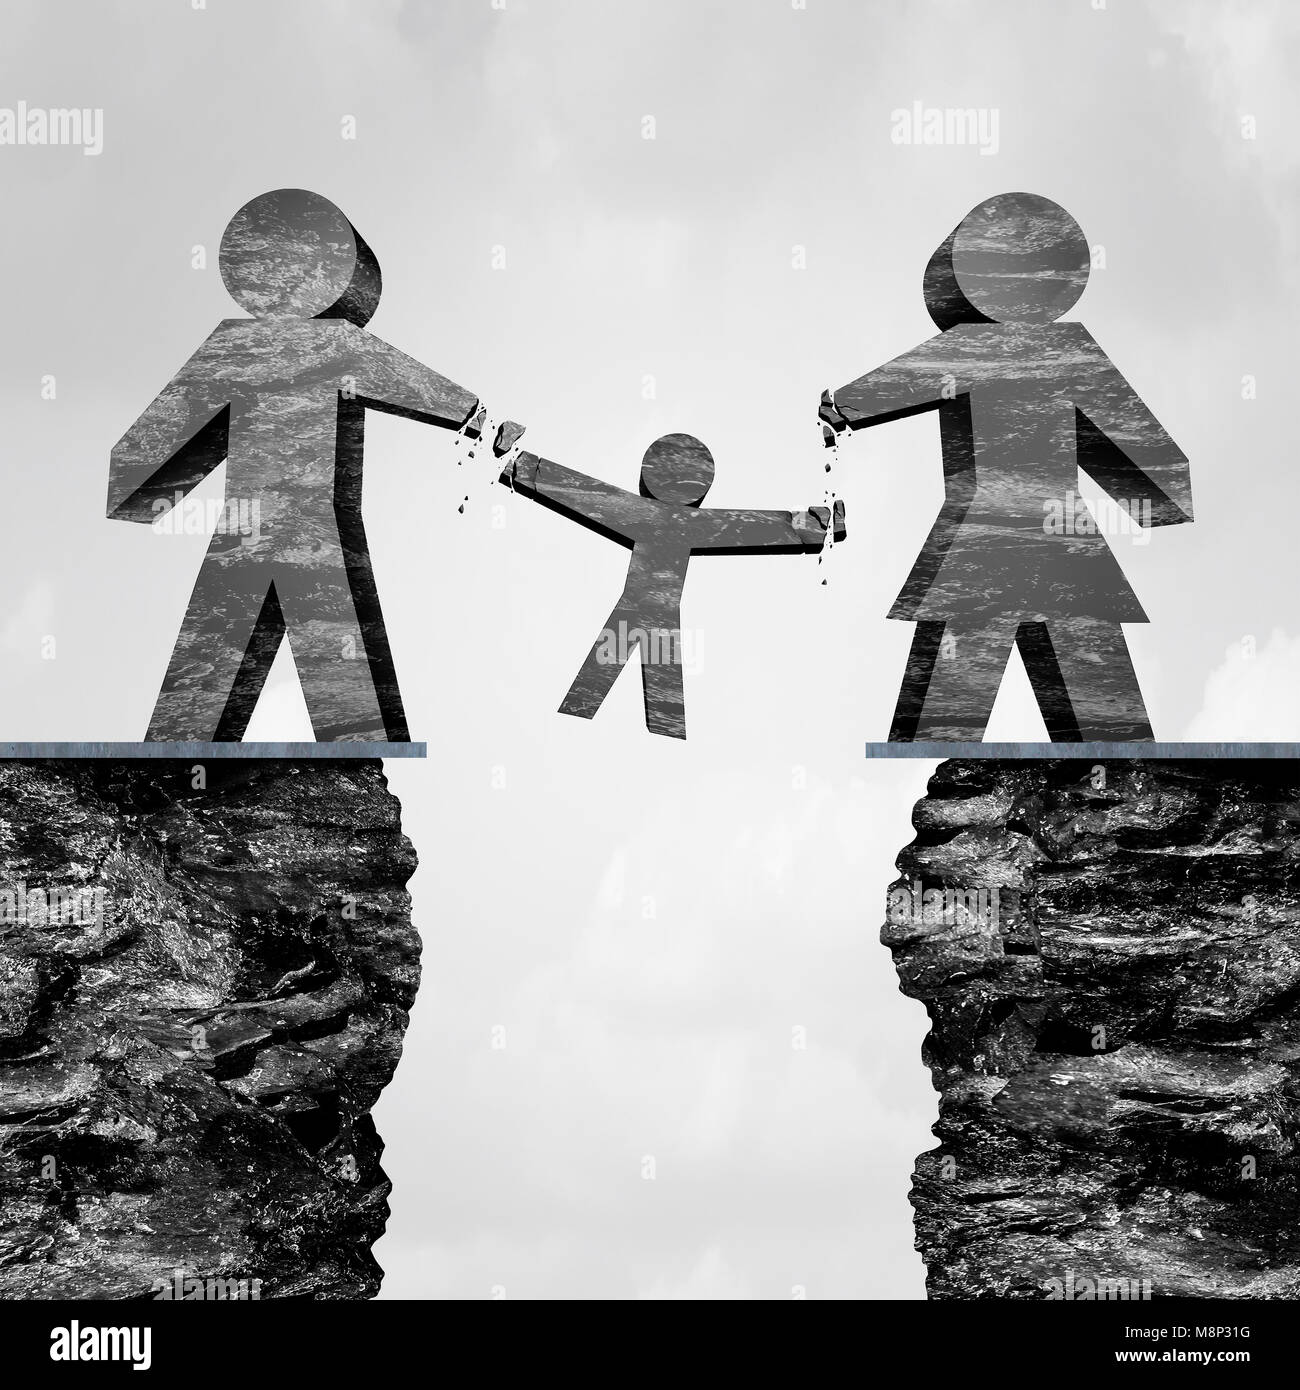 Verlieren sorgerecht als scheidungversuch Uneinigkeit parenting Kinder als Child Protective Services Symbol mit 3D-Illustration Elemente. Stockfoto